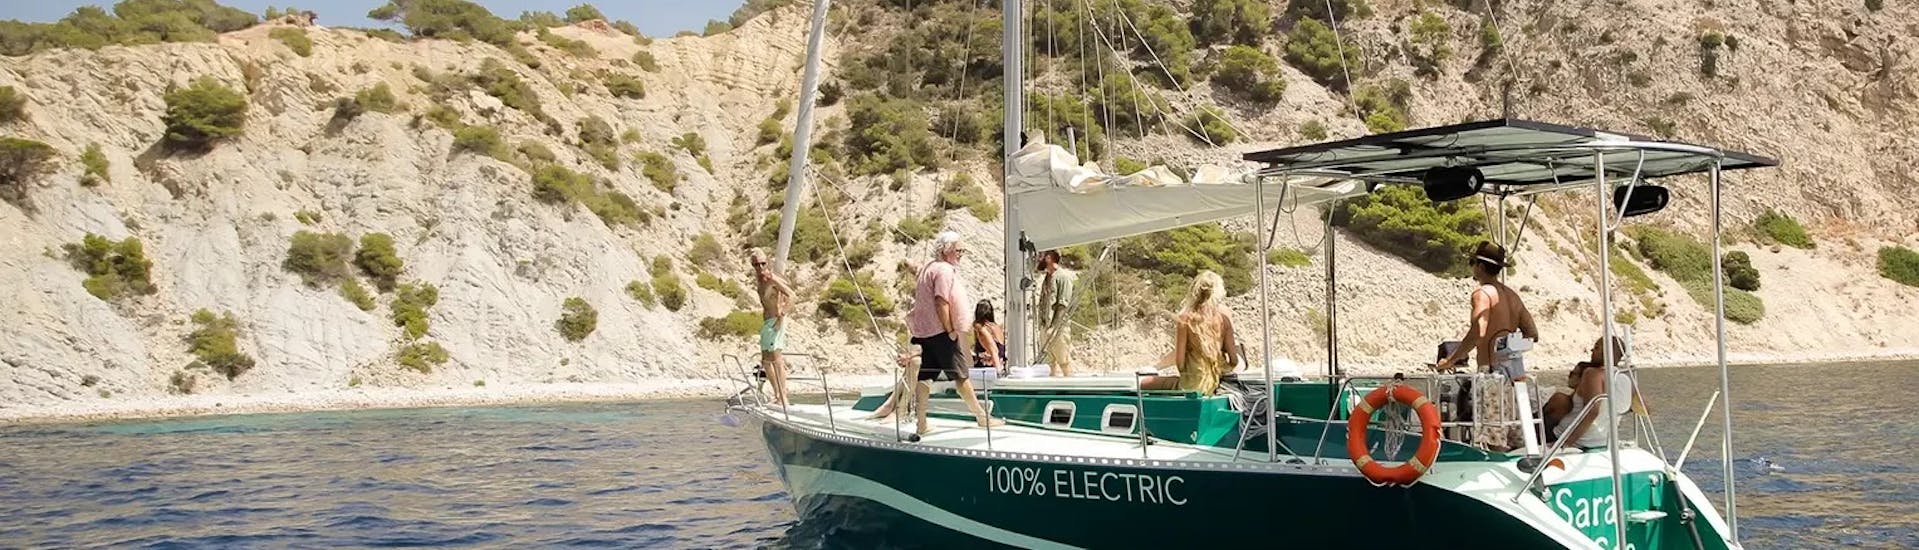 Der Monohull erkundet die Küste bei der Privaten Ganztages-Bootstour um Ibiza mit Schnorcheln.